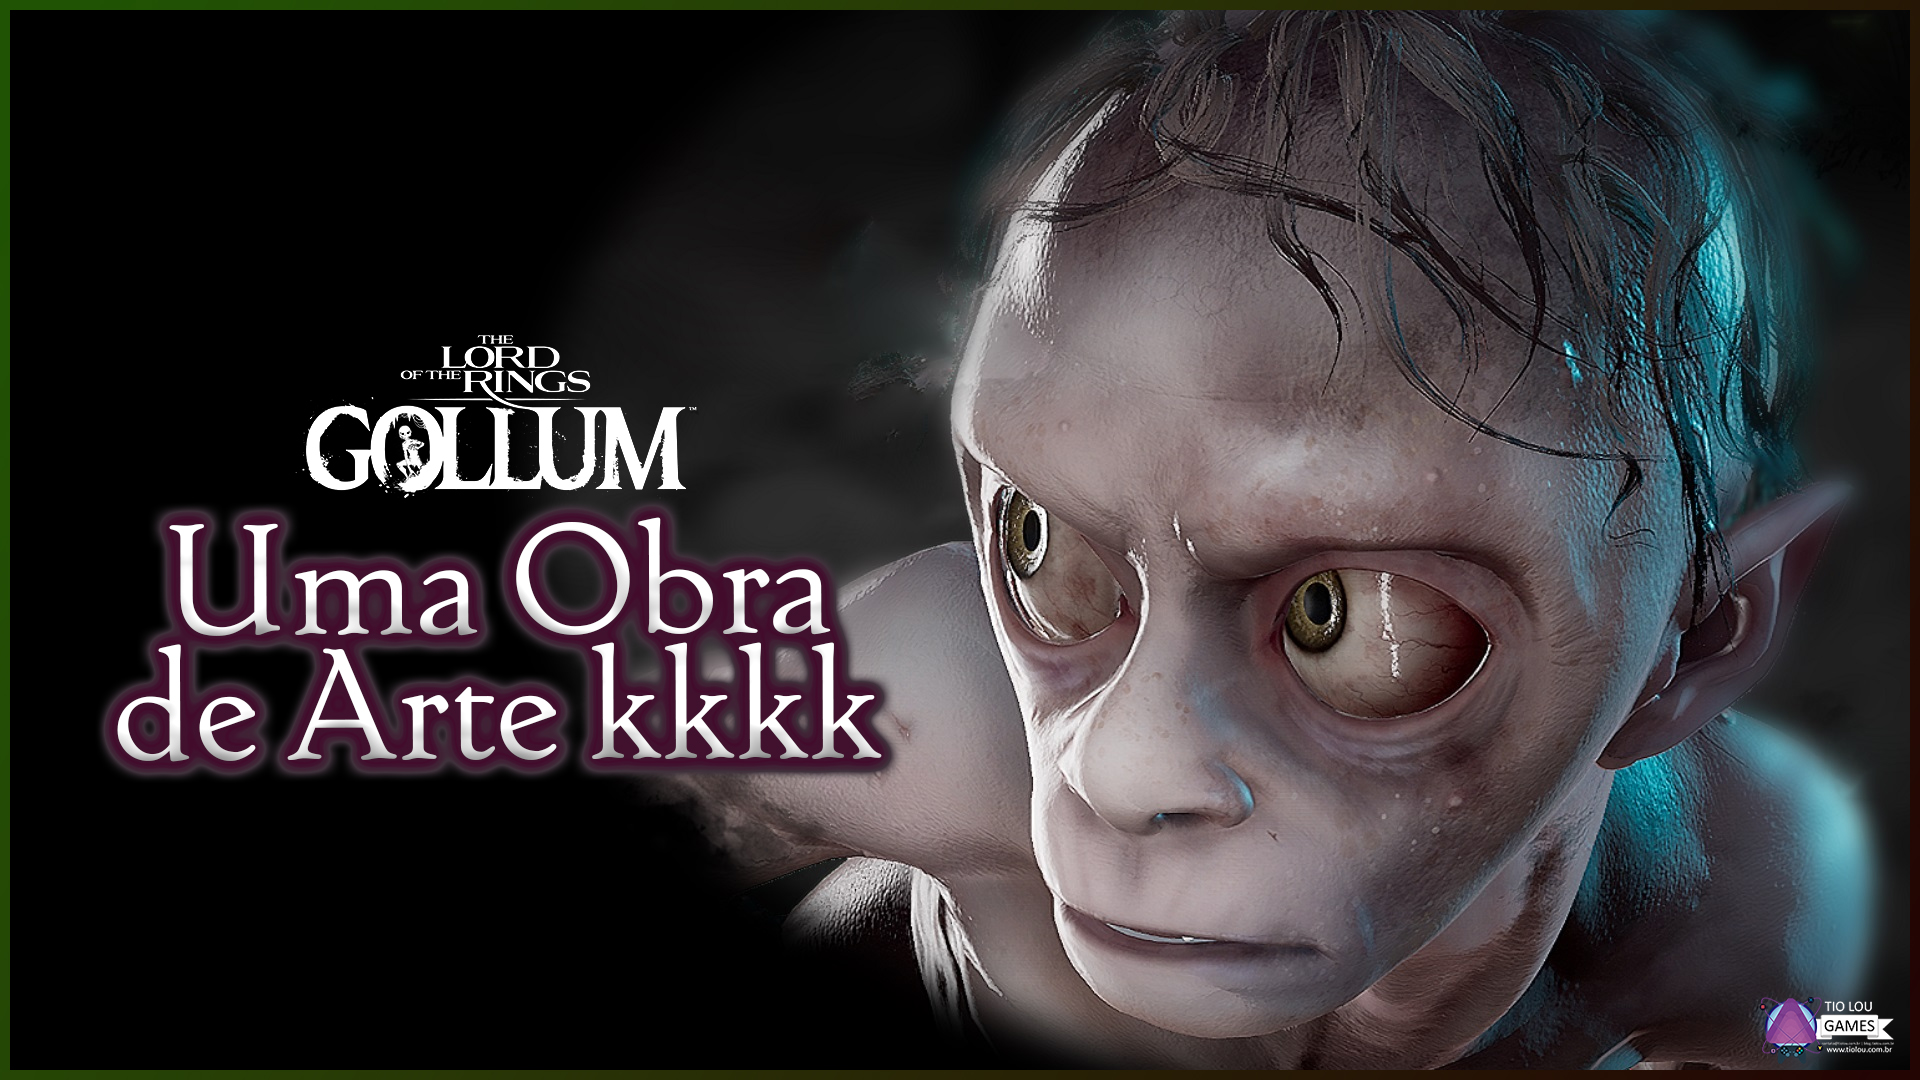 The Lord of the Rings Gollum é uma obra de arte kkkk